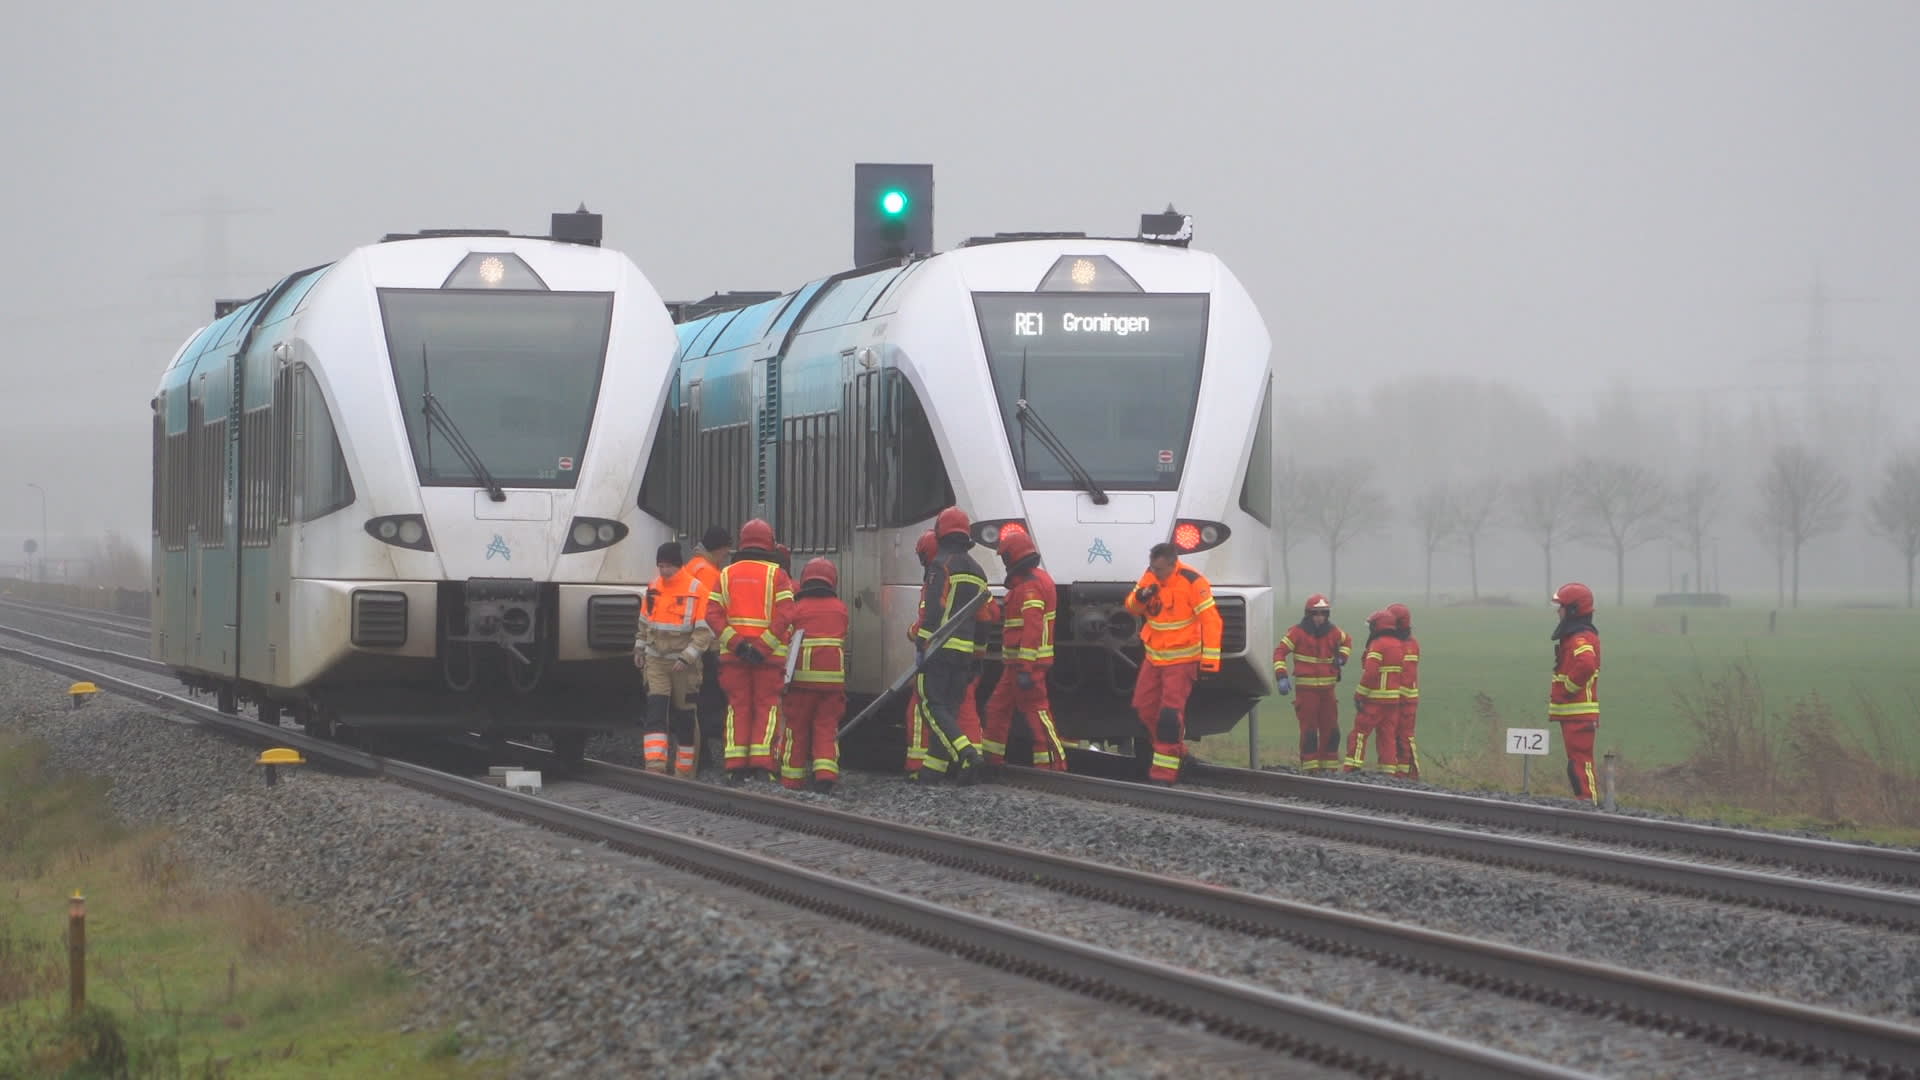 Voetganger overleden na aanrijding met trein in Zuidhorn